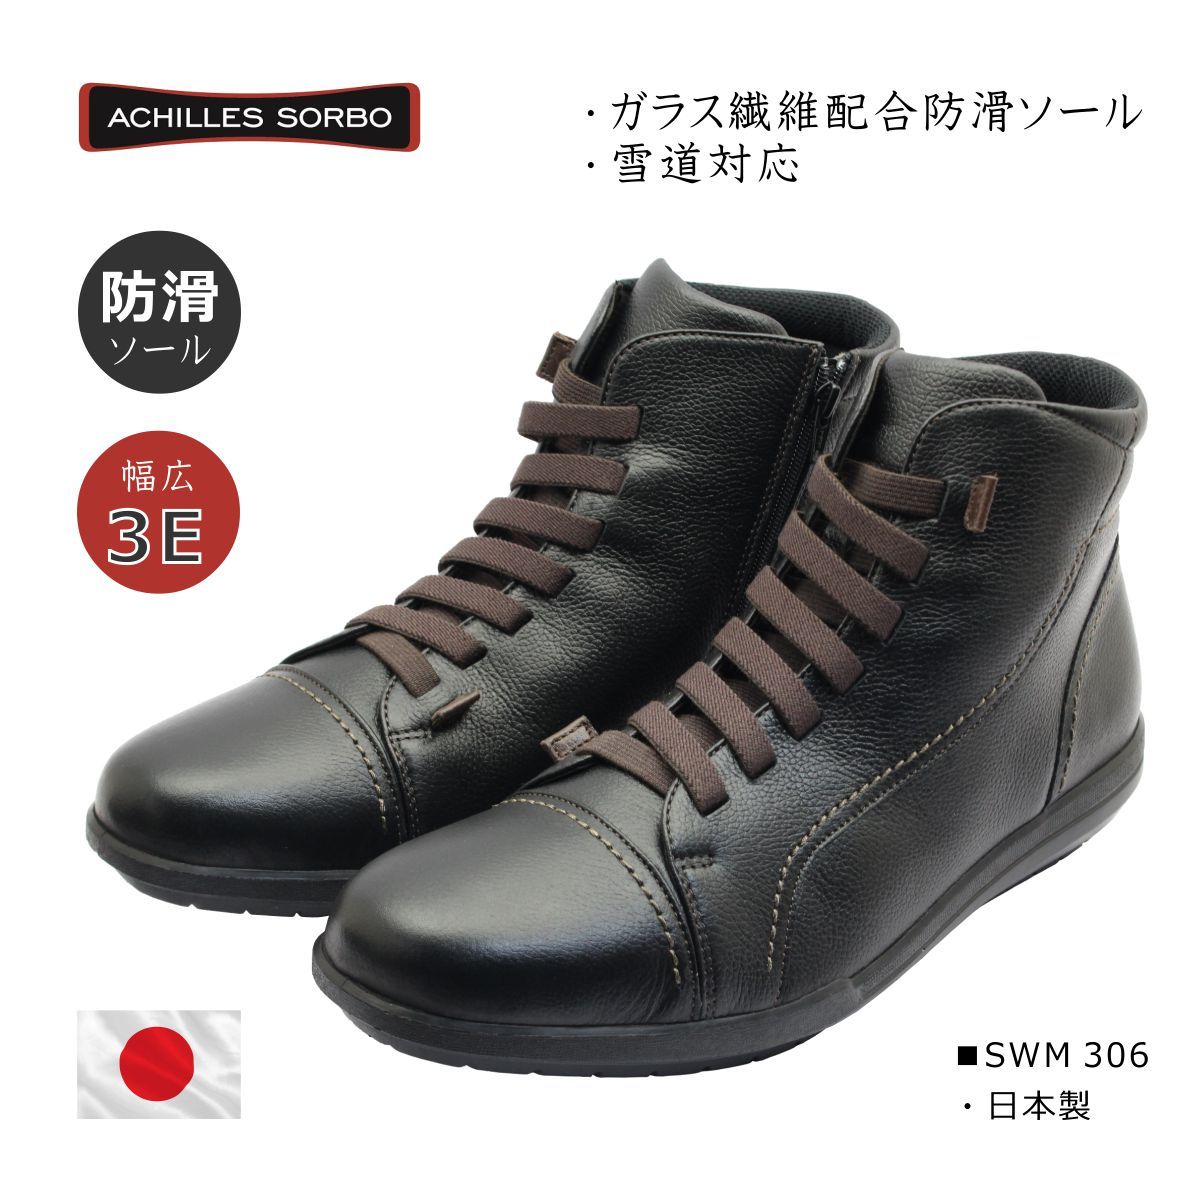 Achilles SORBO アキレス ソルボ メンズ ウォーキング スノー ブーツ SWM 306 日本製 3E 本革 靴 黒 ブラック